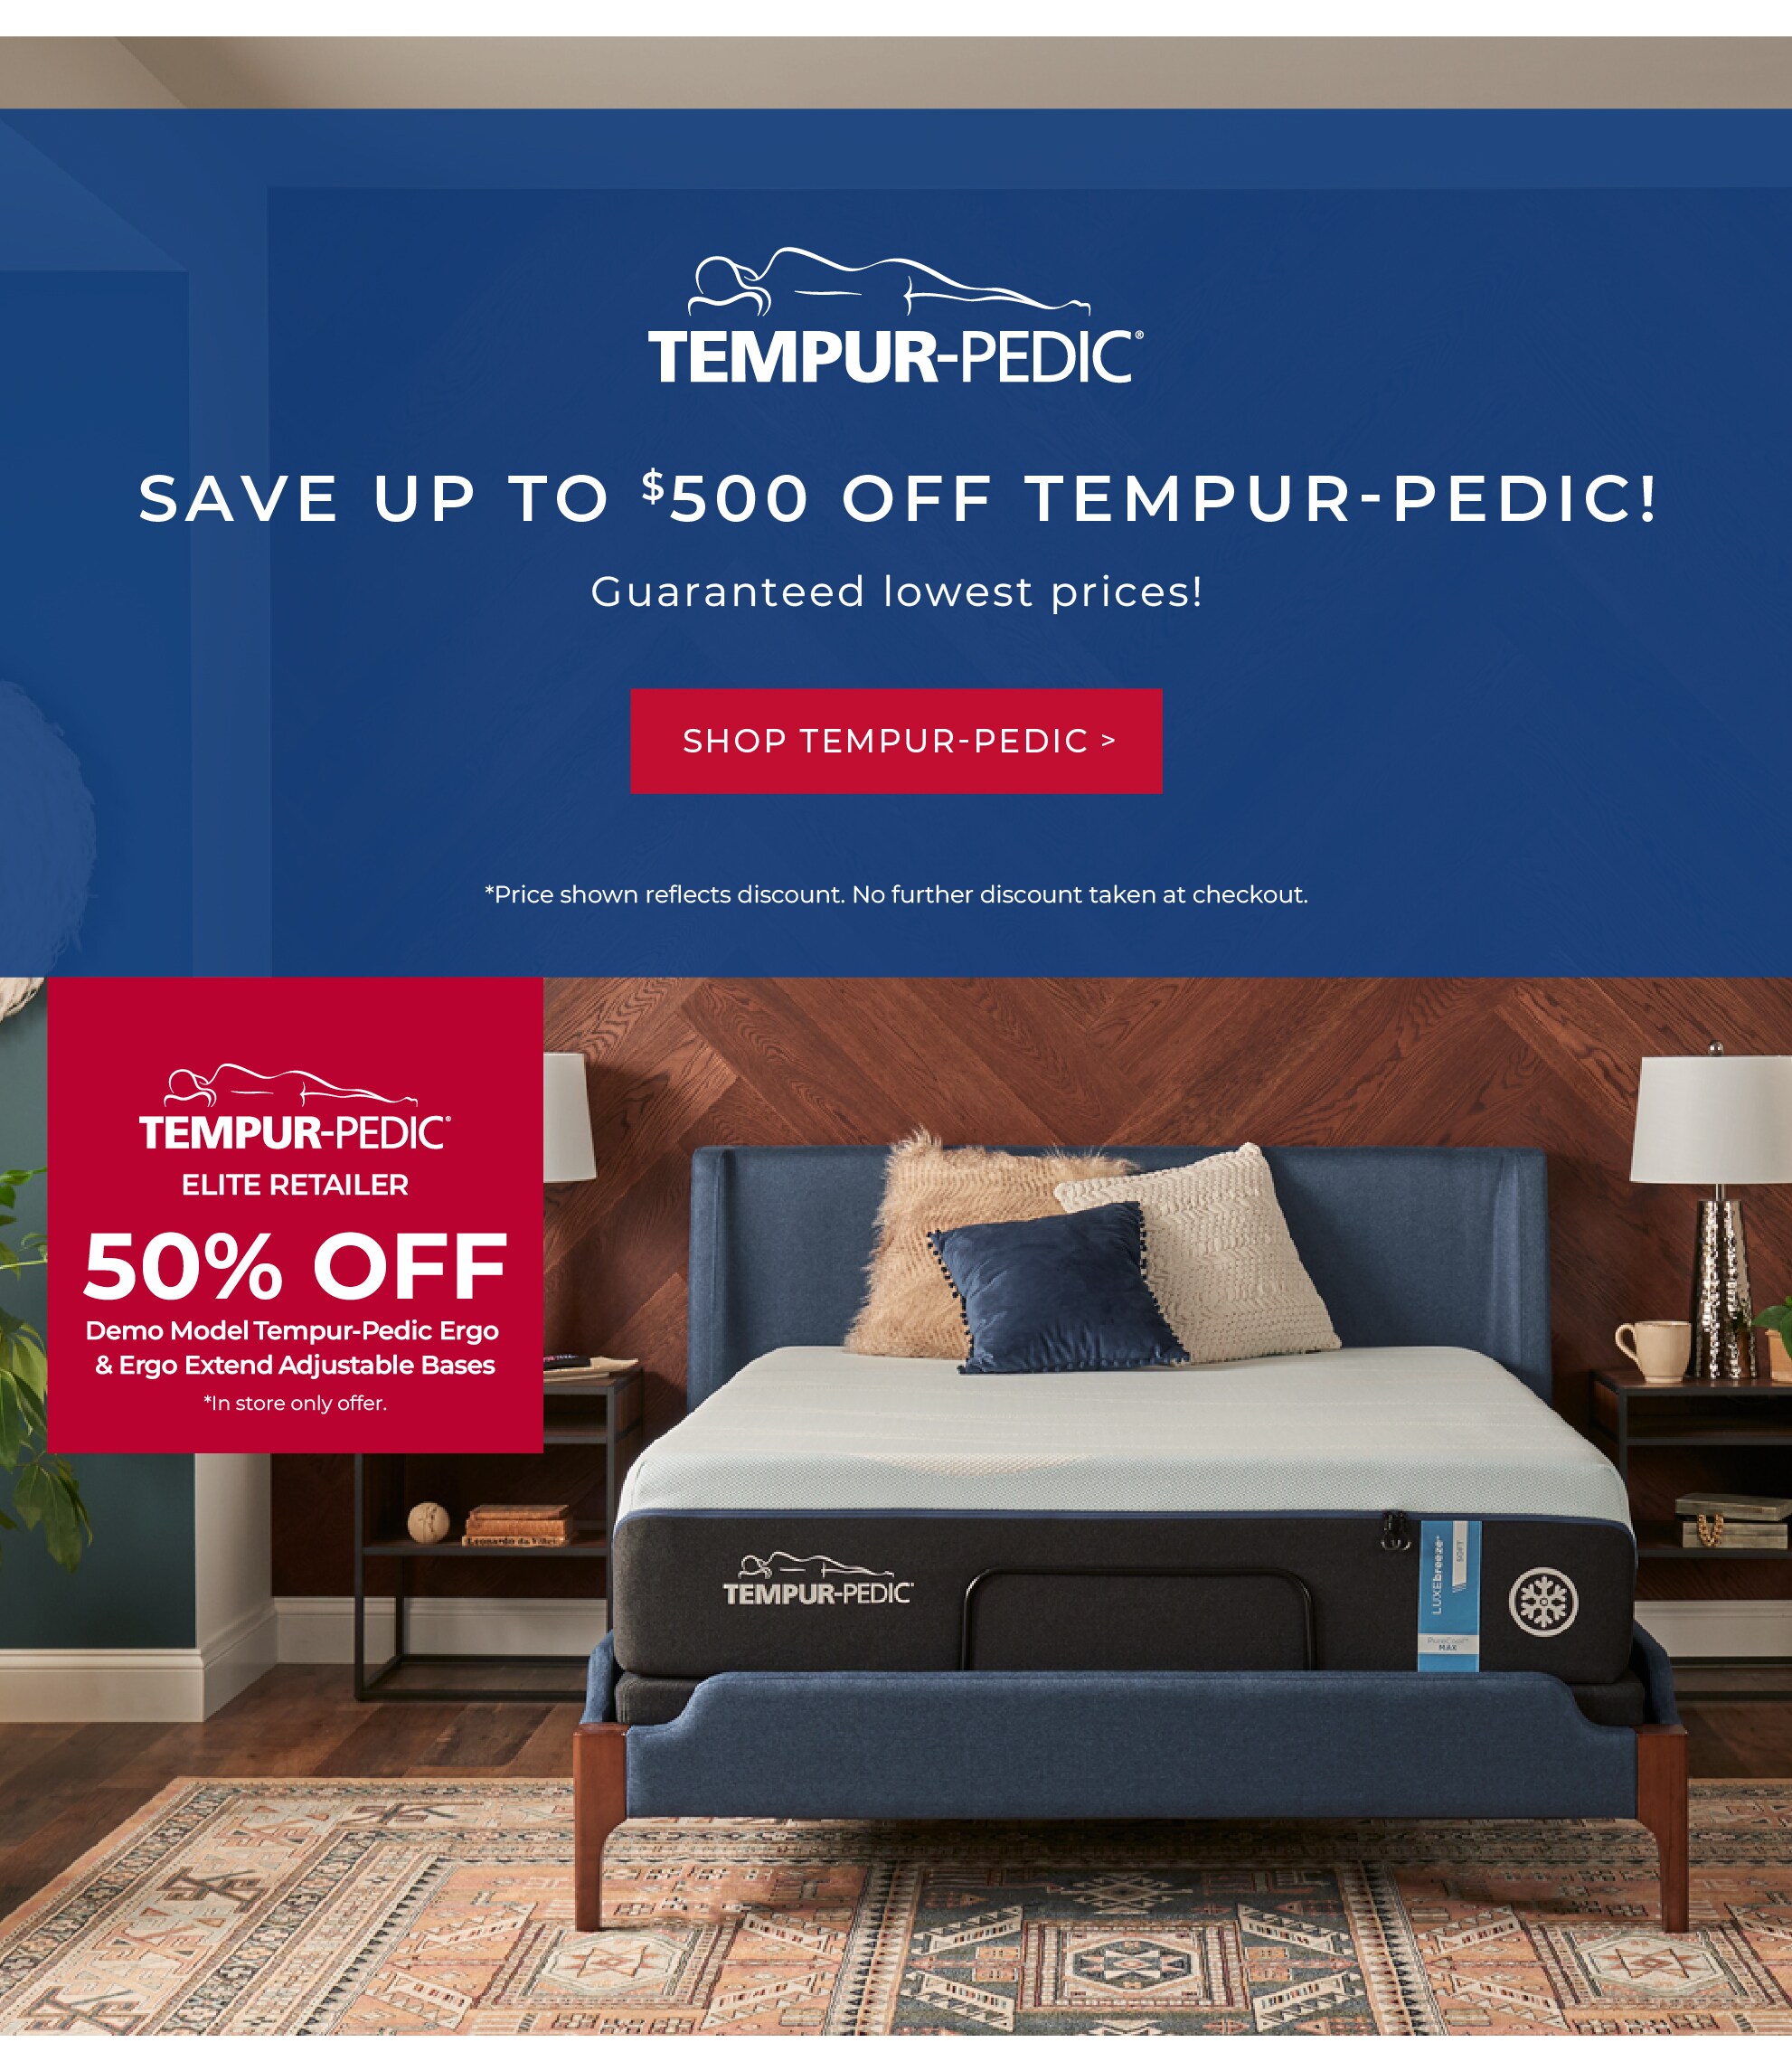 Shop Tempur-pedic deals.